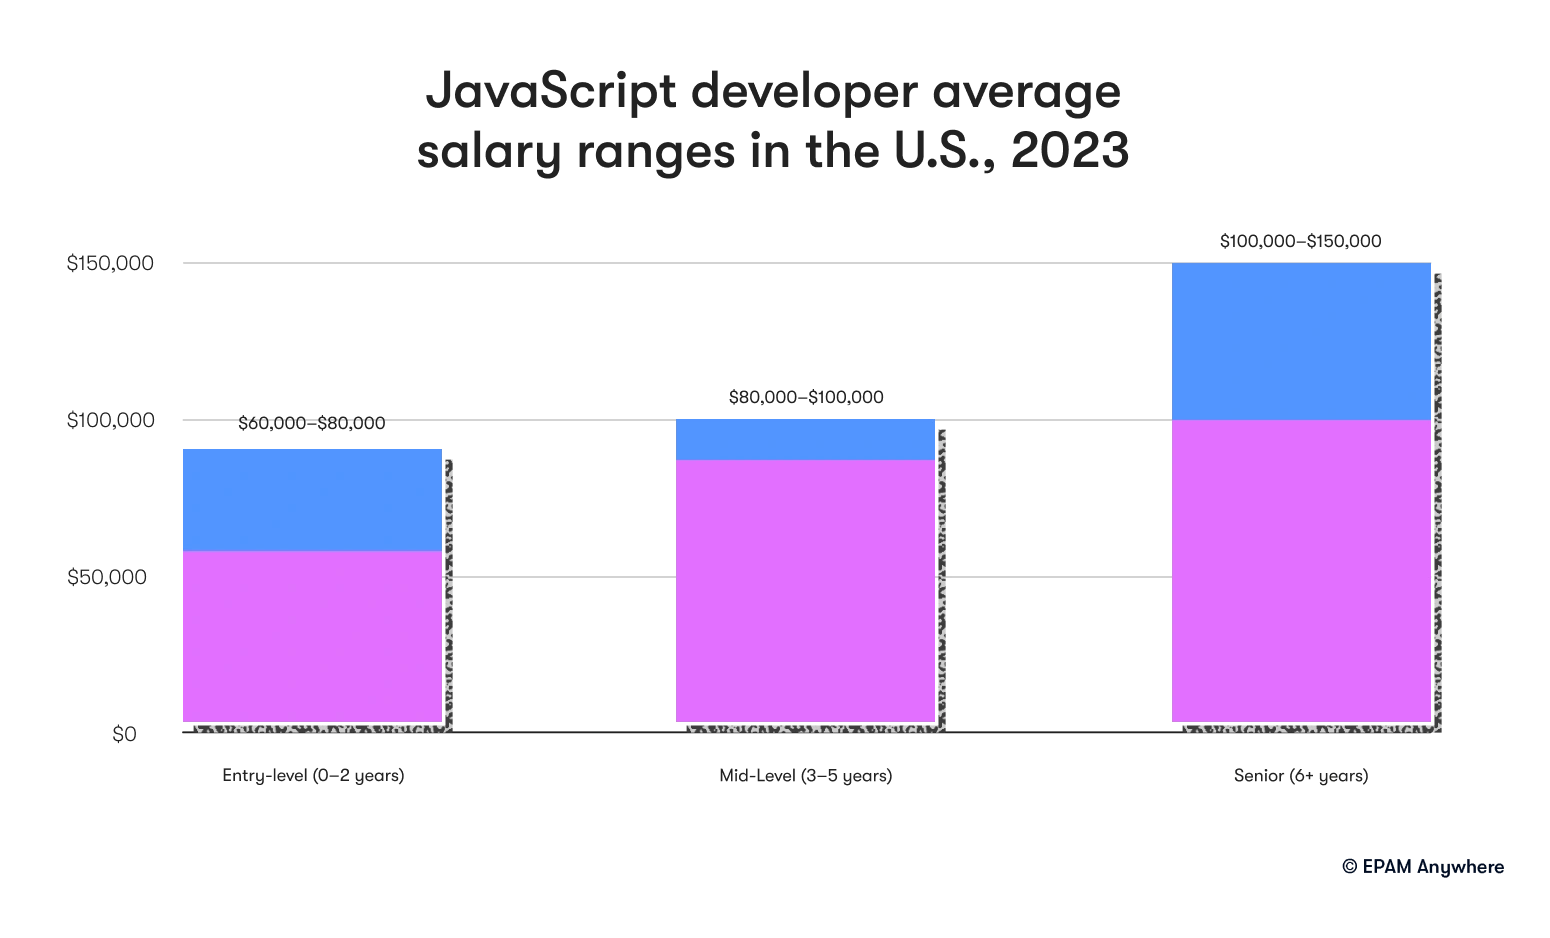 JavaScript developer average salary ranges